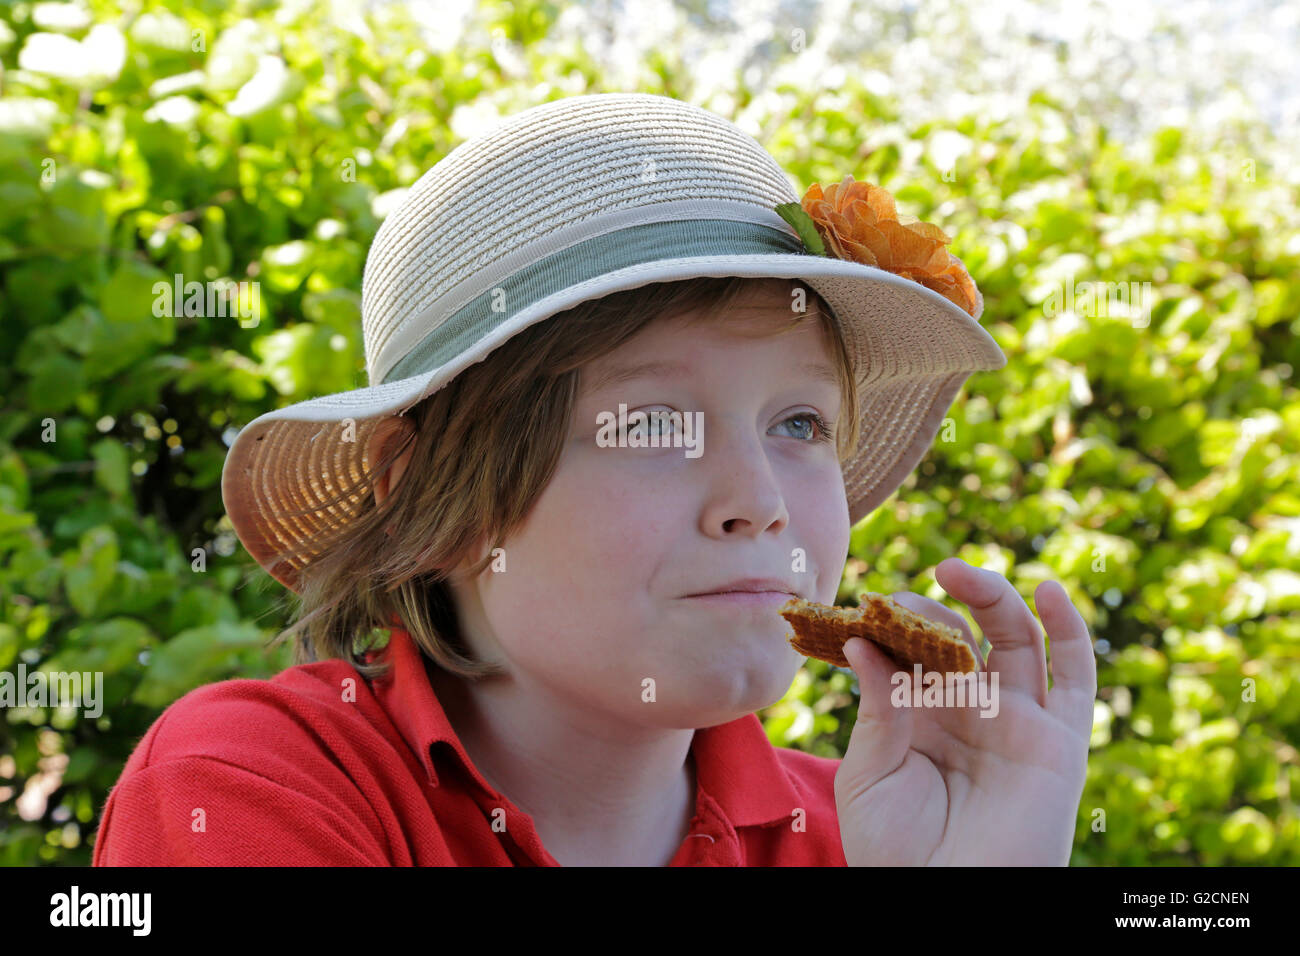 Junge mit Sonnenhut einen Keks essen Stockfoto